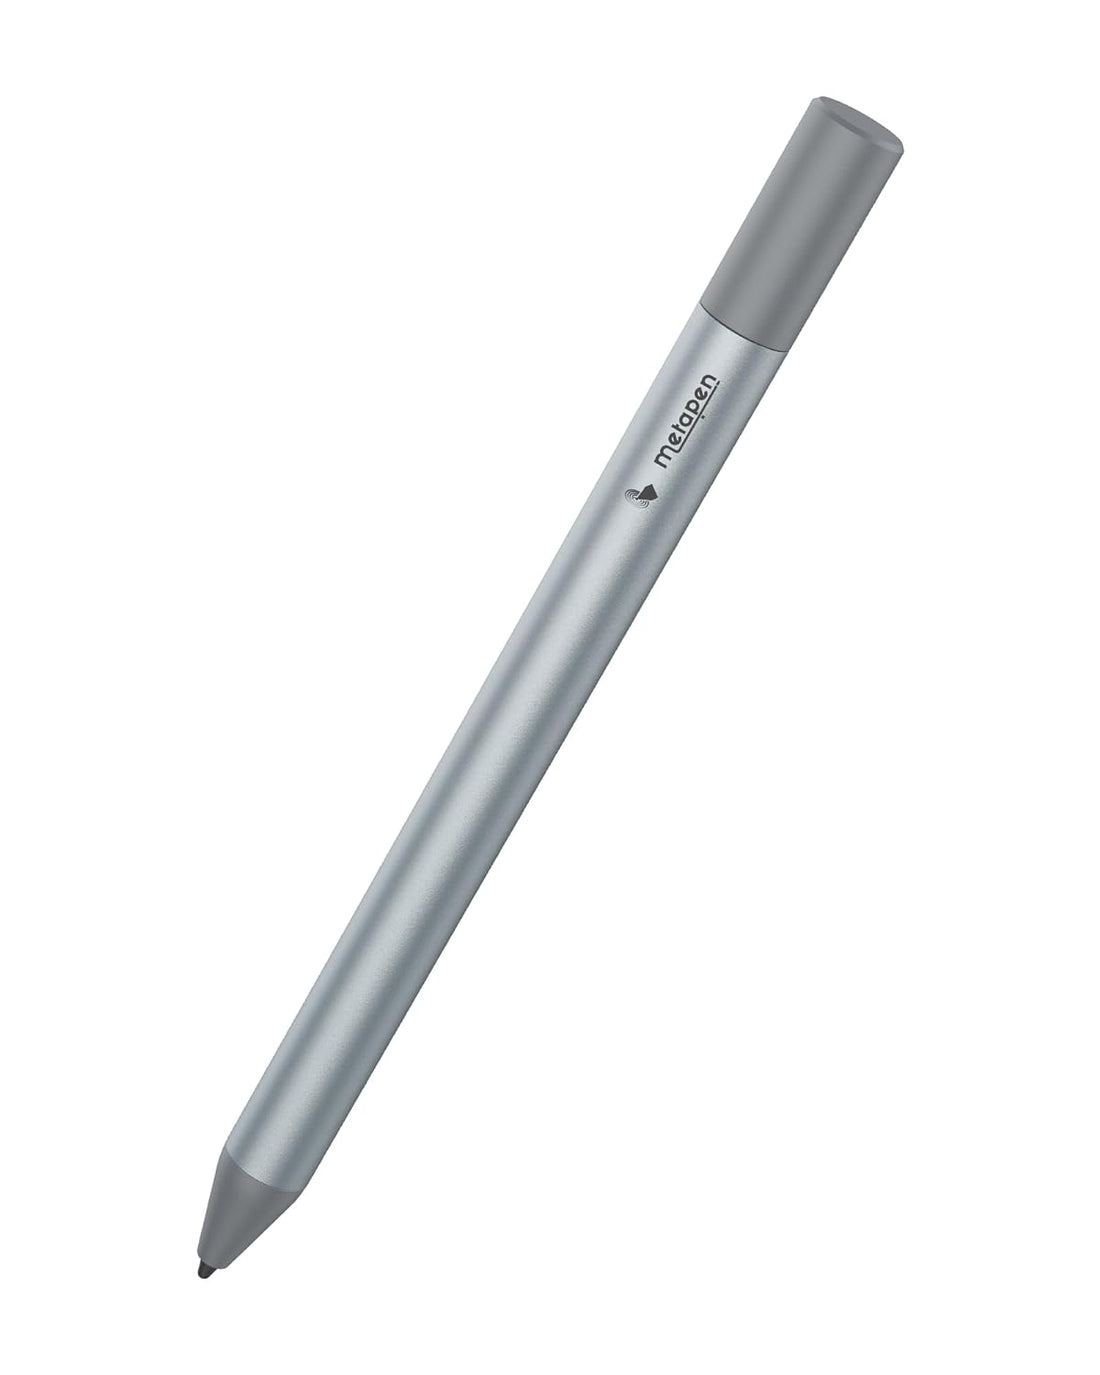 Metapen G1 Air for chromebook USI Pen